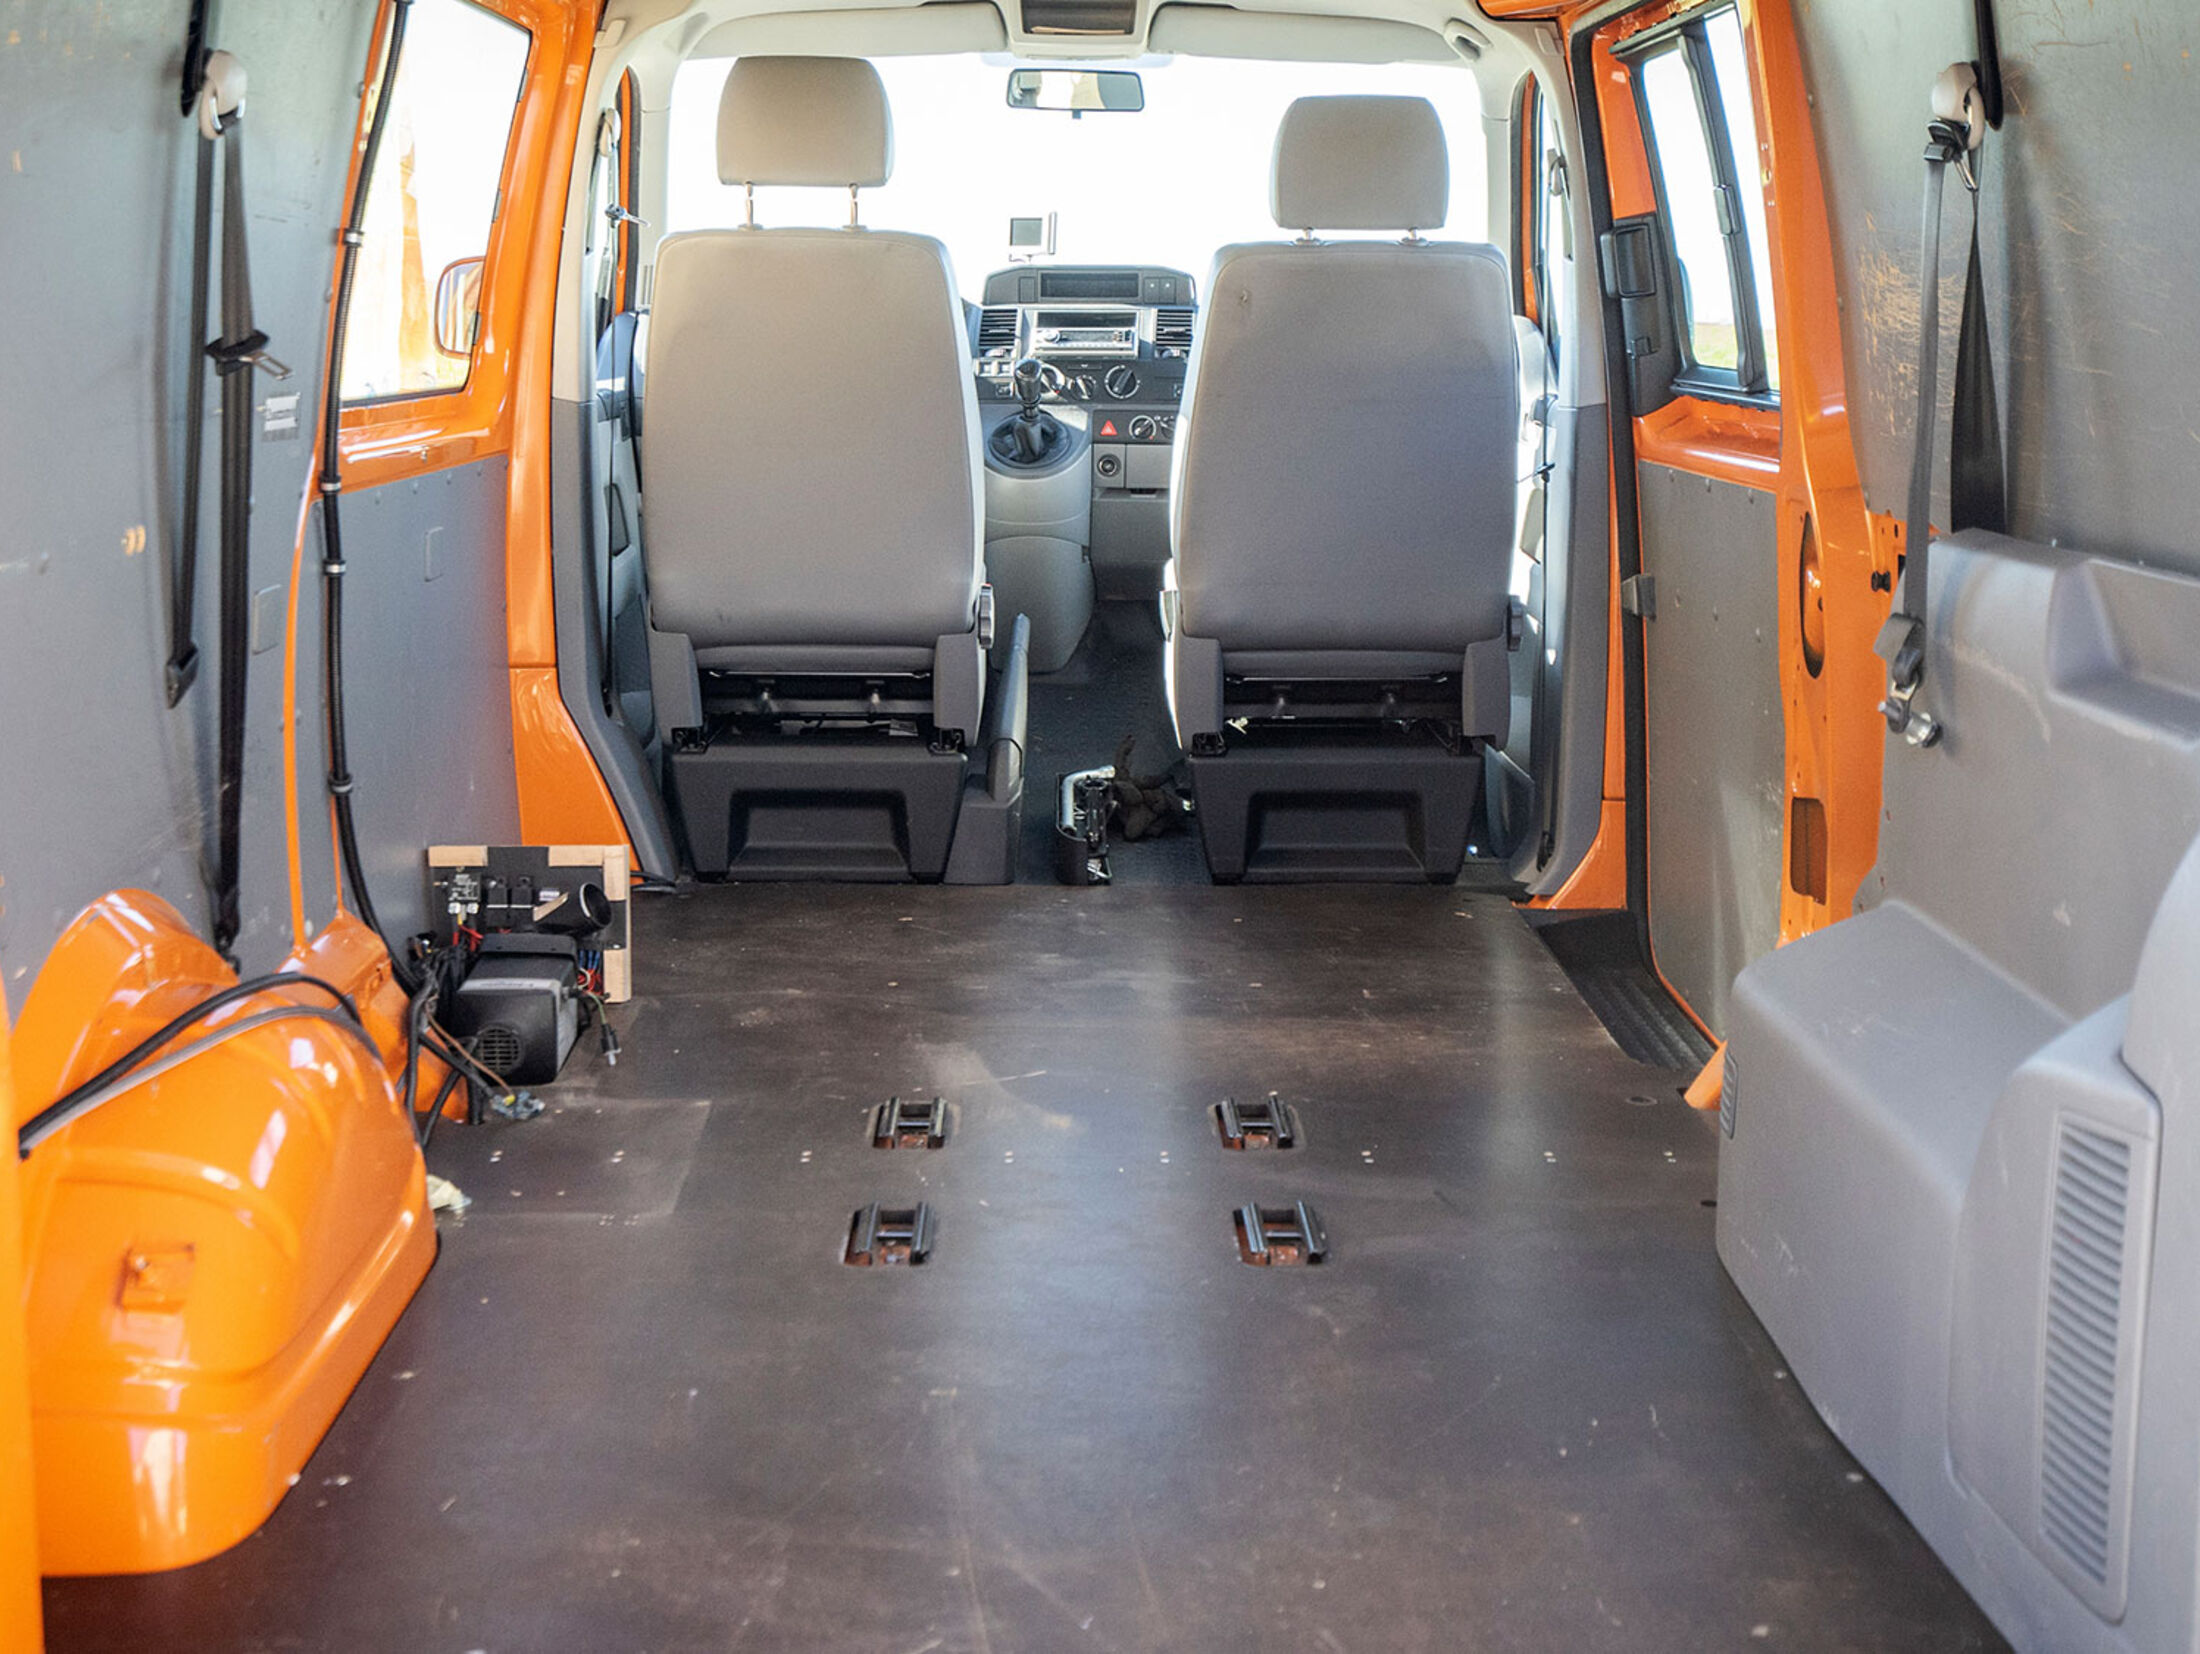 Selbstausbau-Serie VW T5 Camper: Isolierung und Möbel